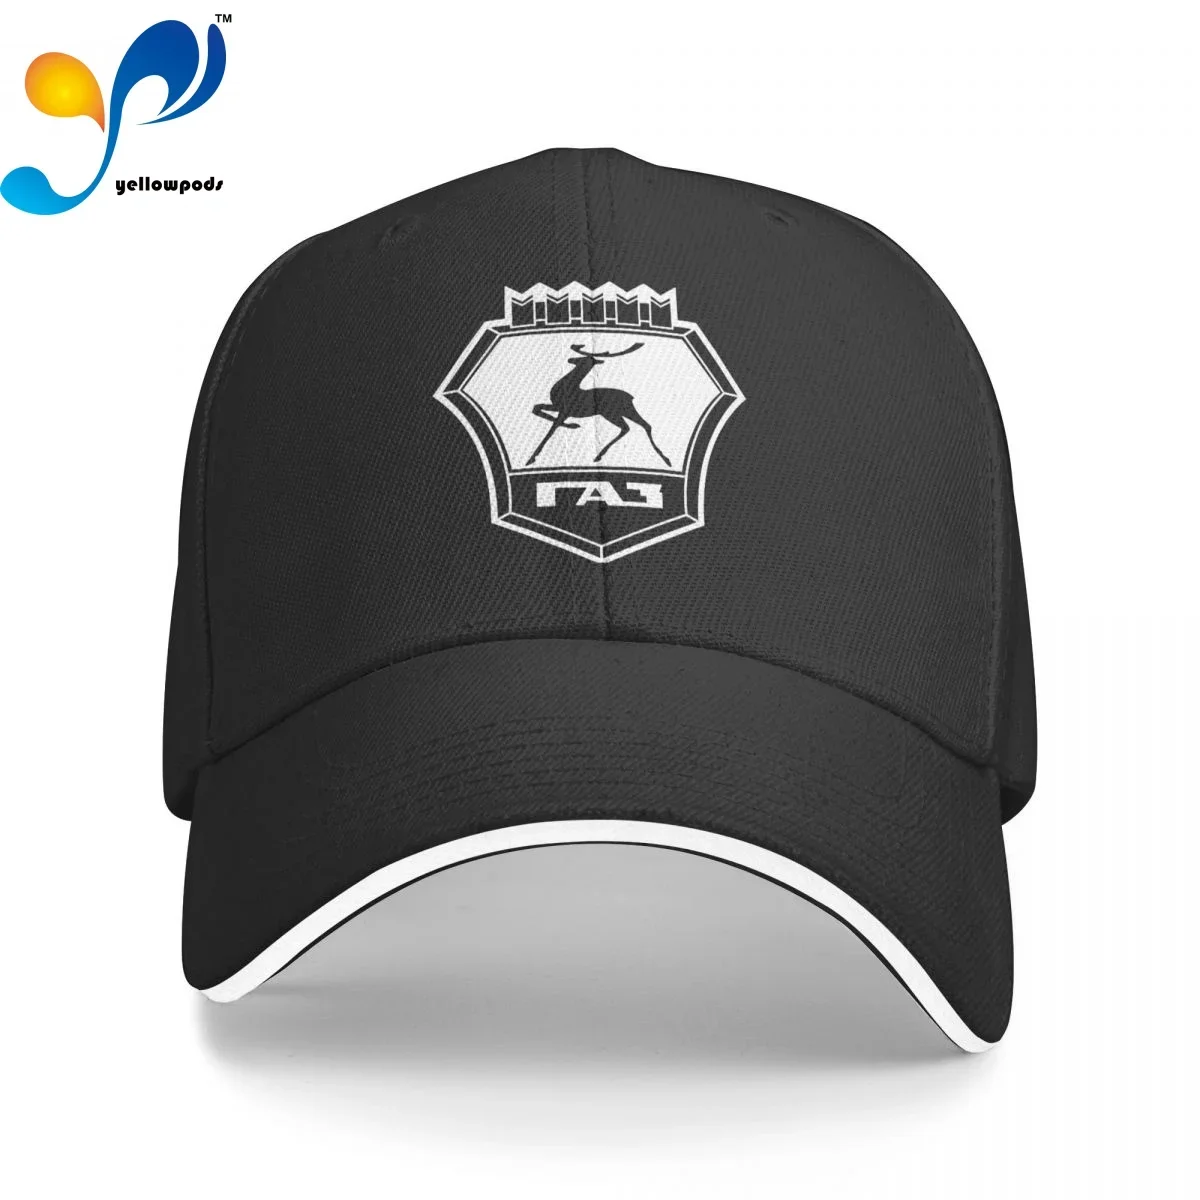 

Fashion New Russian GAS- Men's New Baseball Cap Fashion Sun Hats Caps for Men and Women